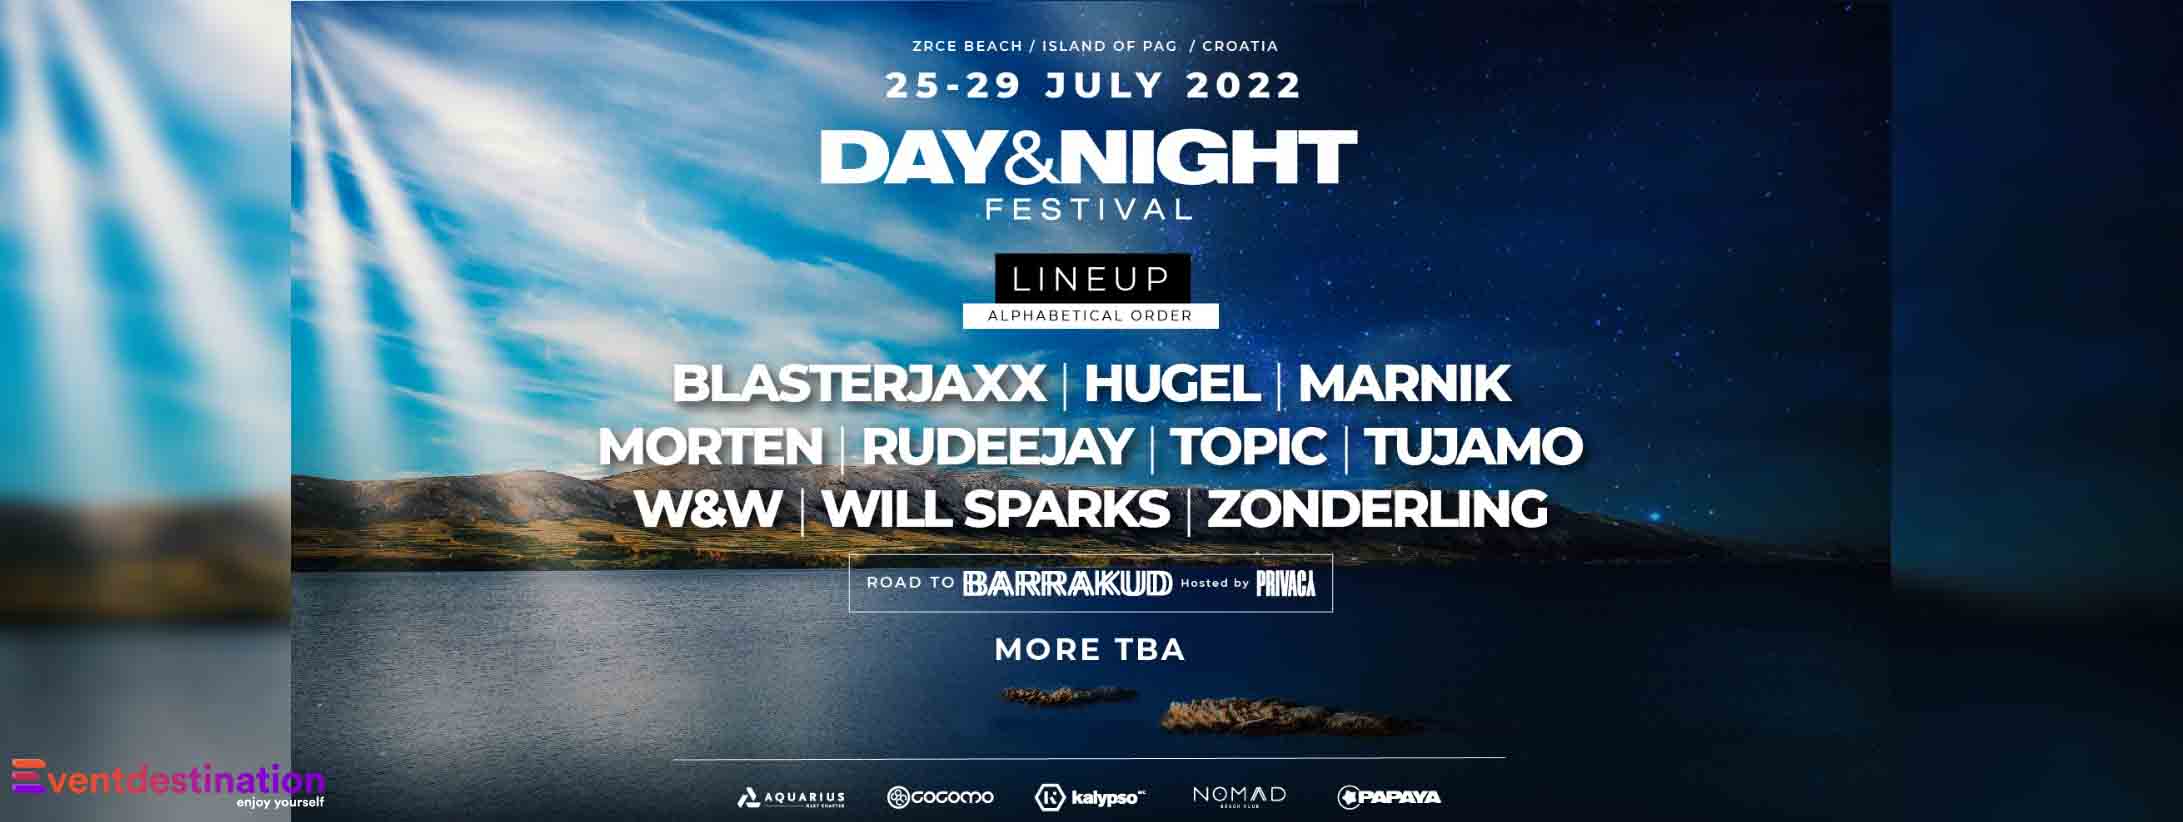 Day & Night Festival 2022 Pag Croazia